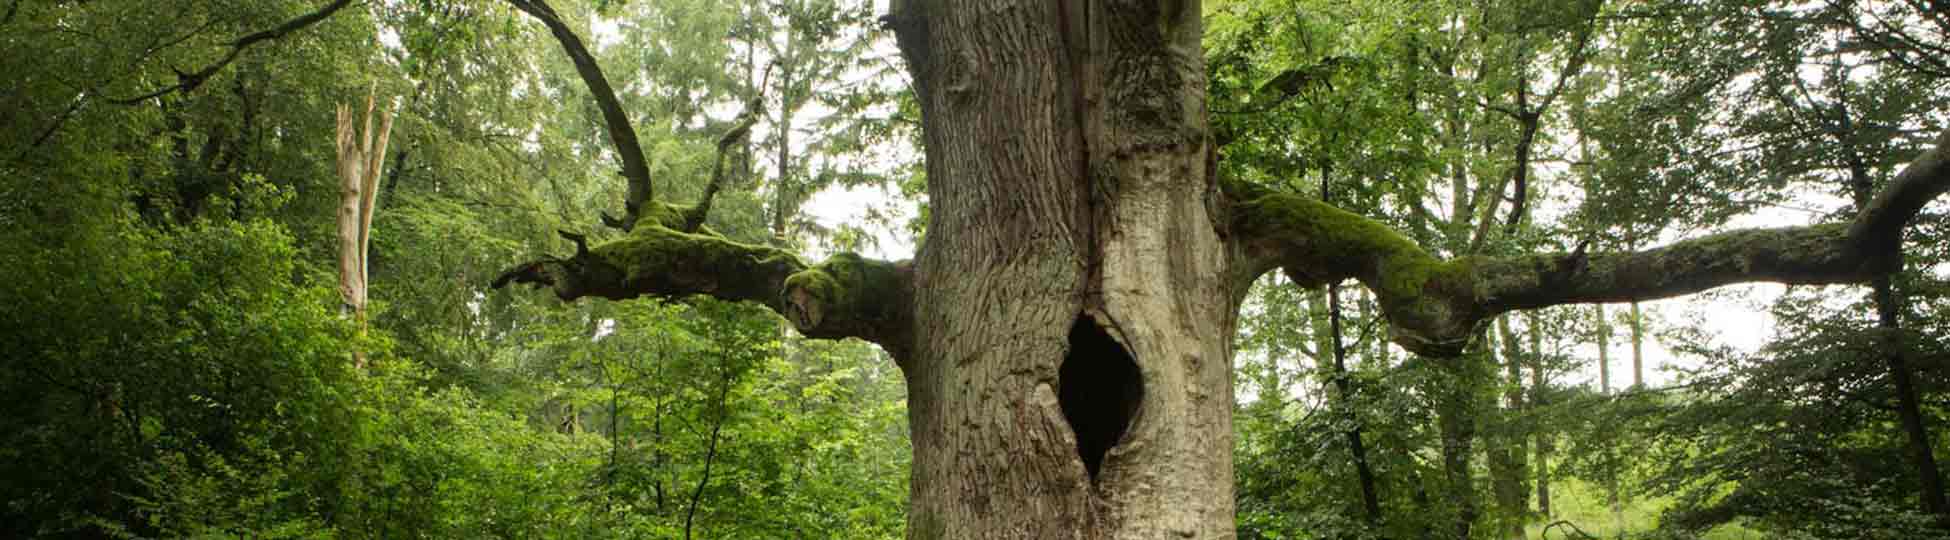 Baum mit großem Astloch im Urwald